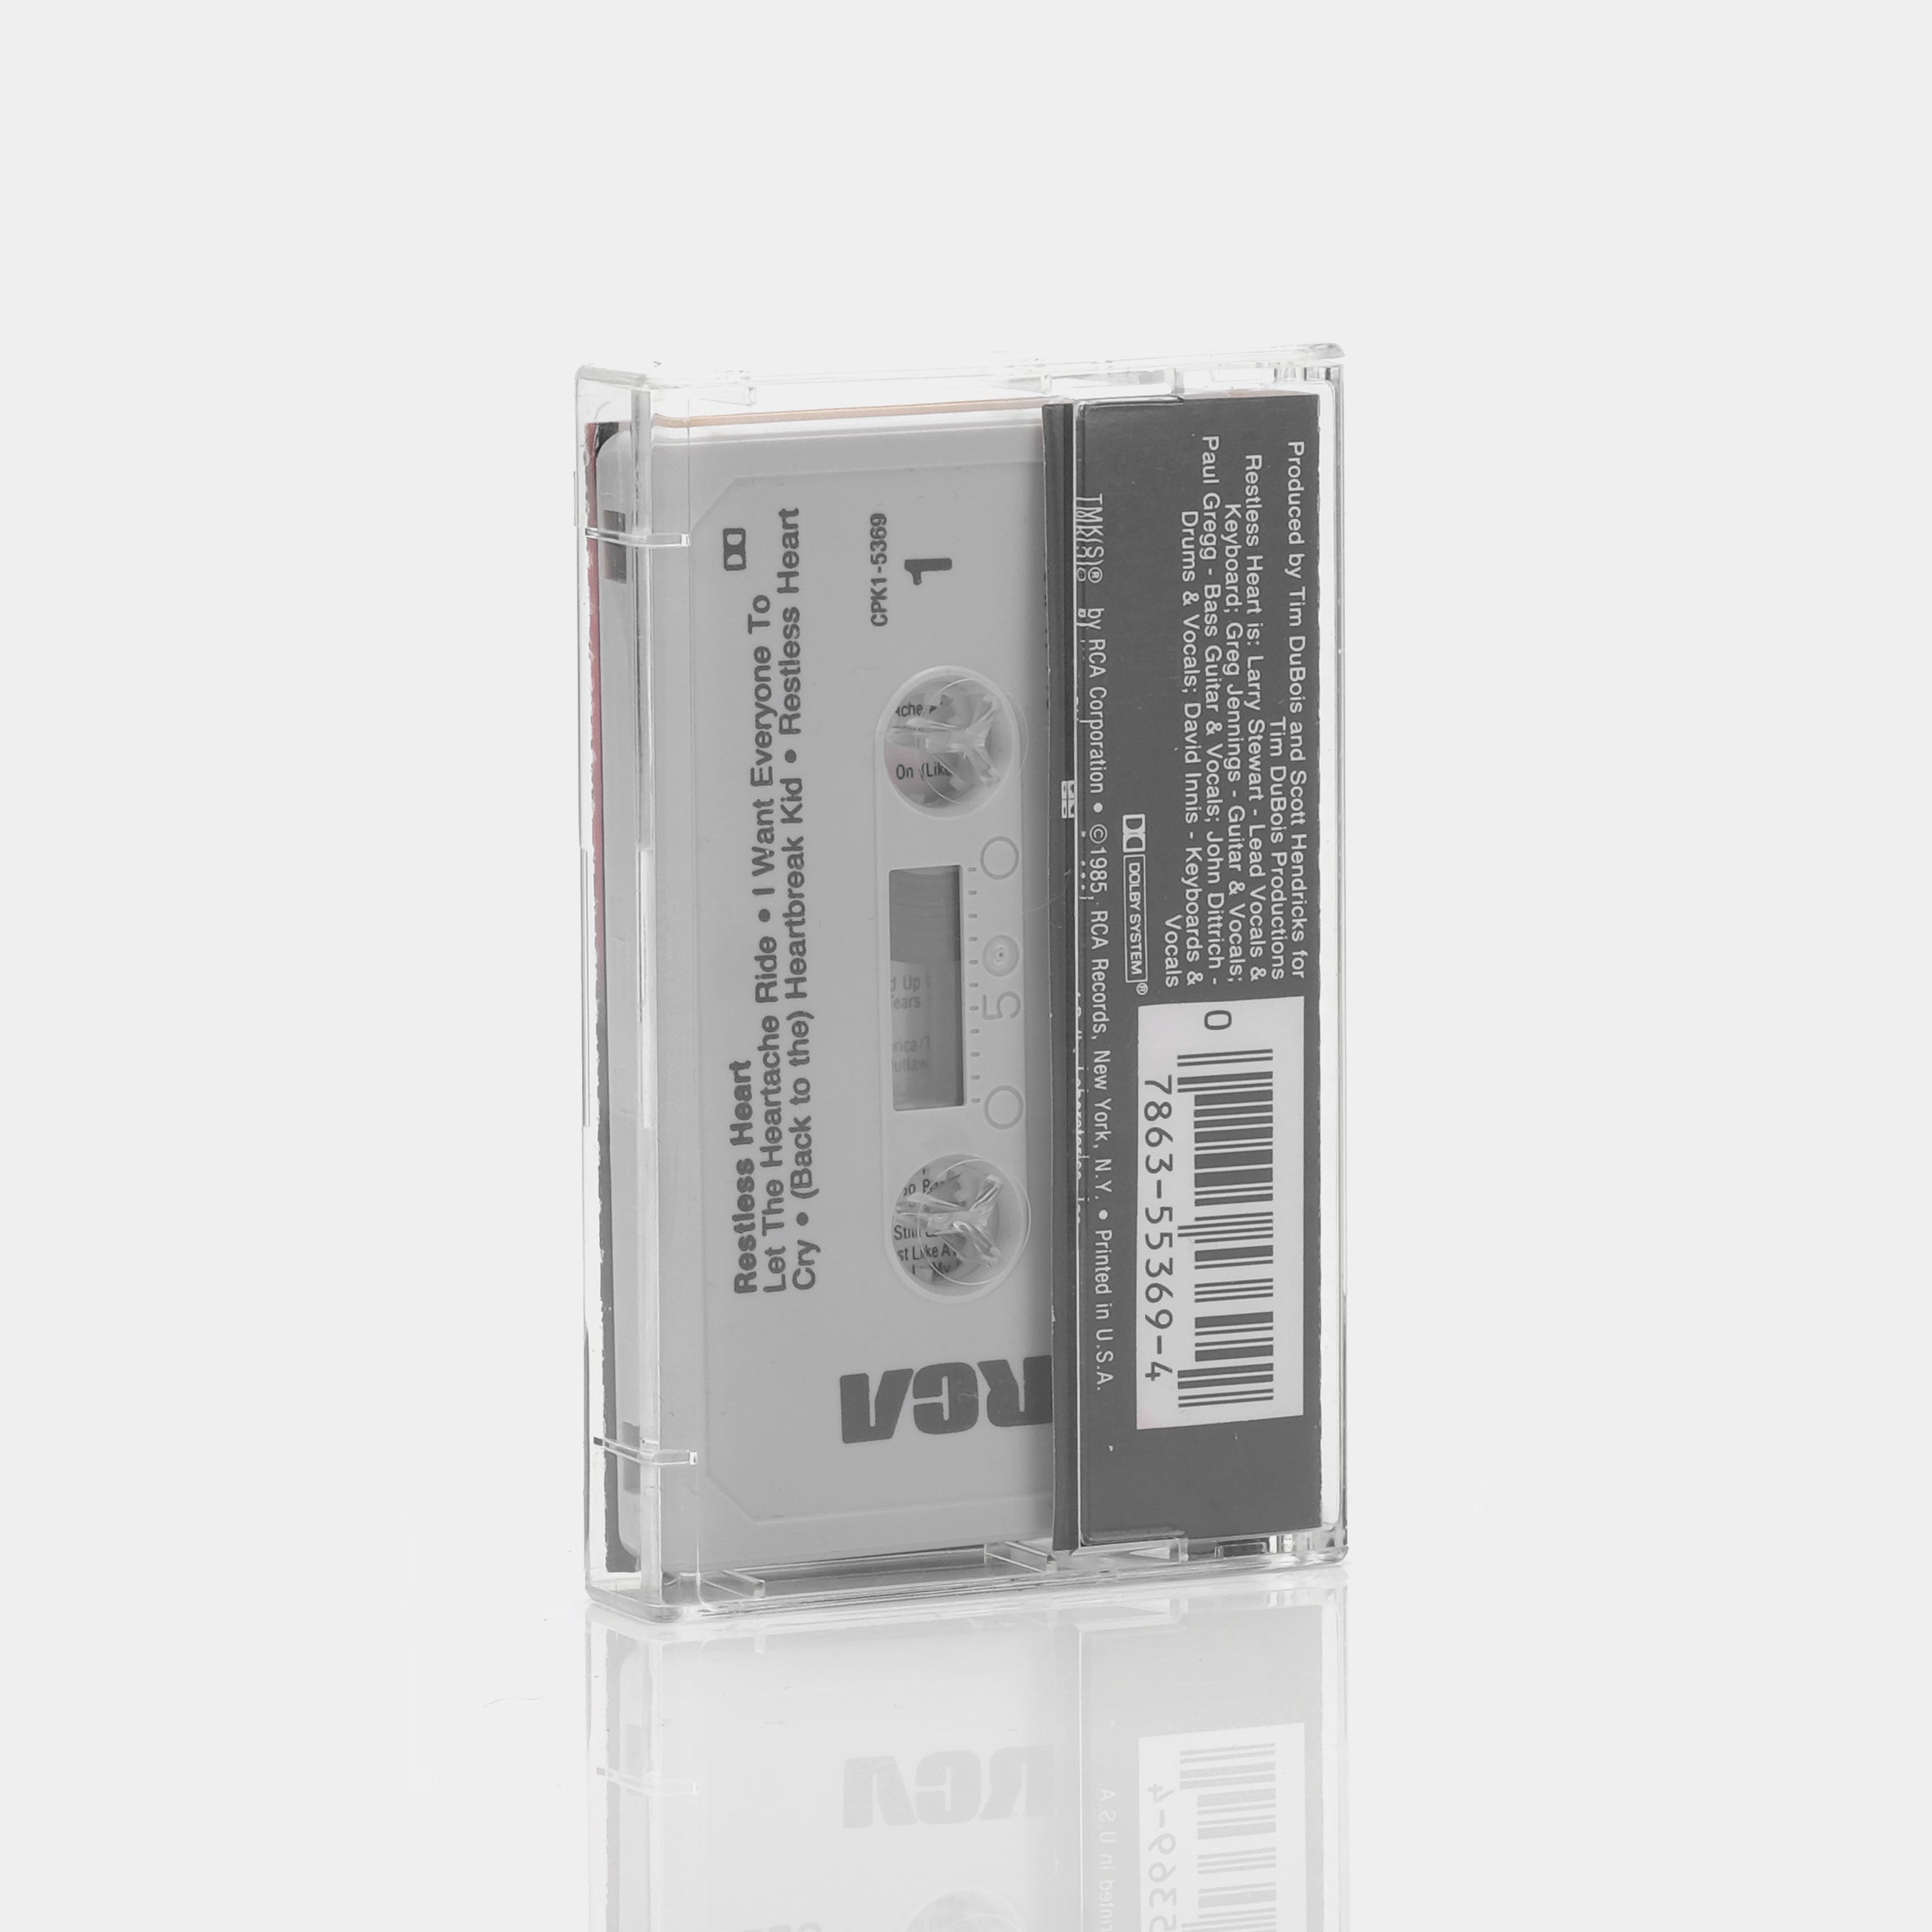 Restless Heart - Restless Heart Cassette Tape